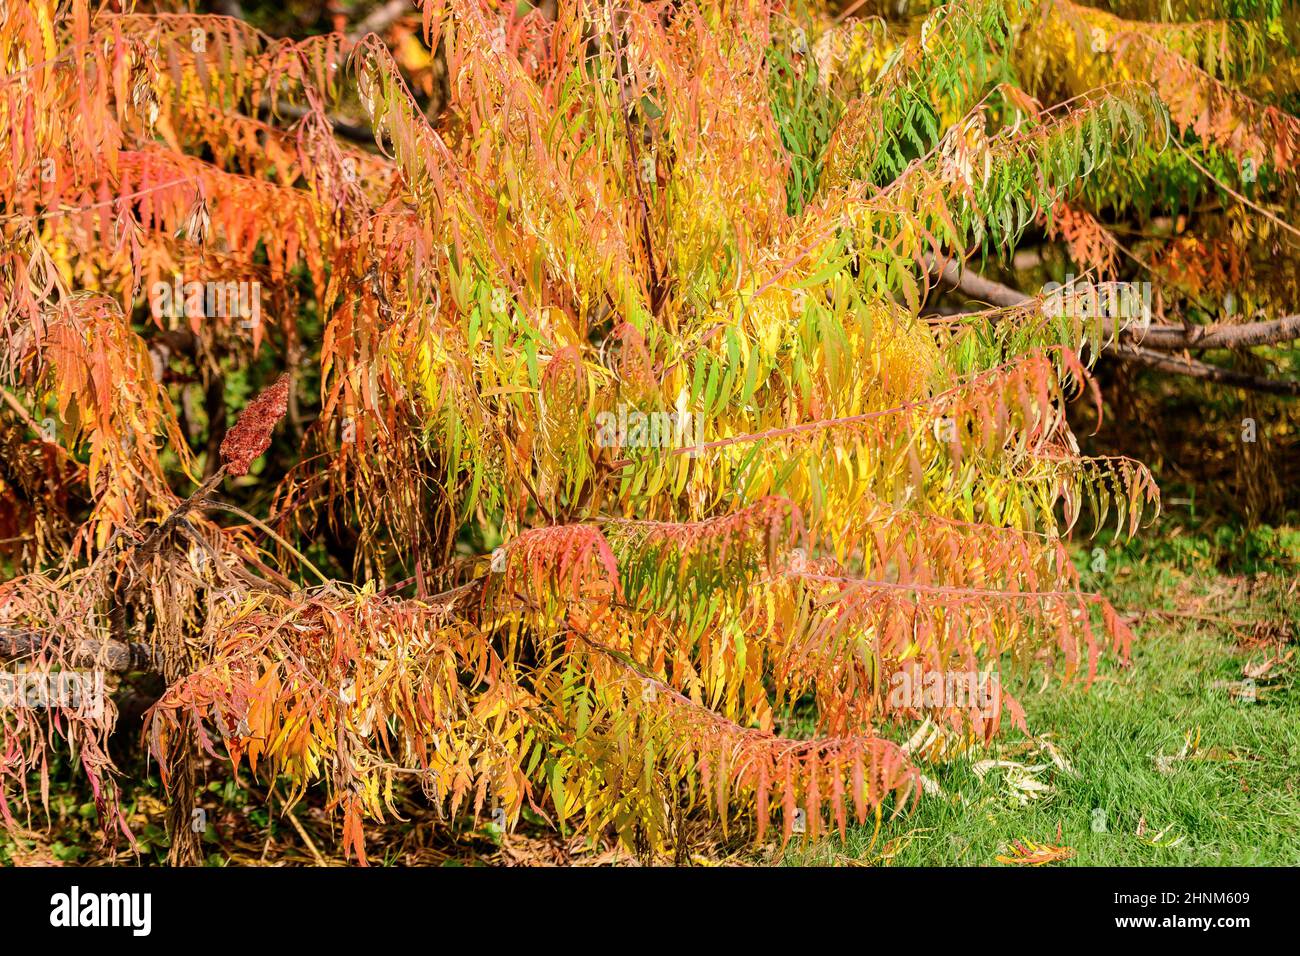 Minimalistischer monochromer Hintergrund mit großen roten und orangen Blättern und kleinen Blüten des Rhus-Strauches, allgemein bekannt als Sumac, Sumach oder sumaq, in einem Ga Stockfoto